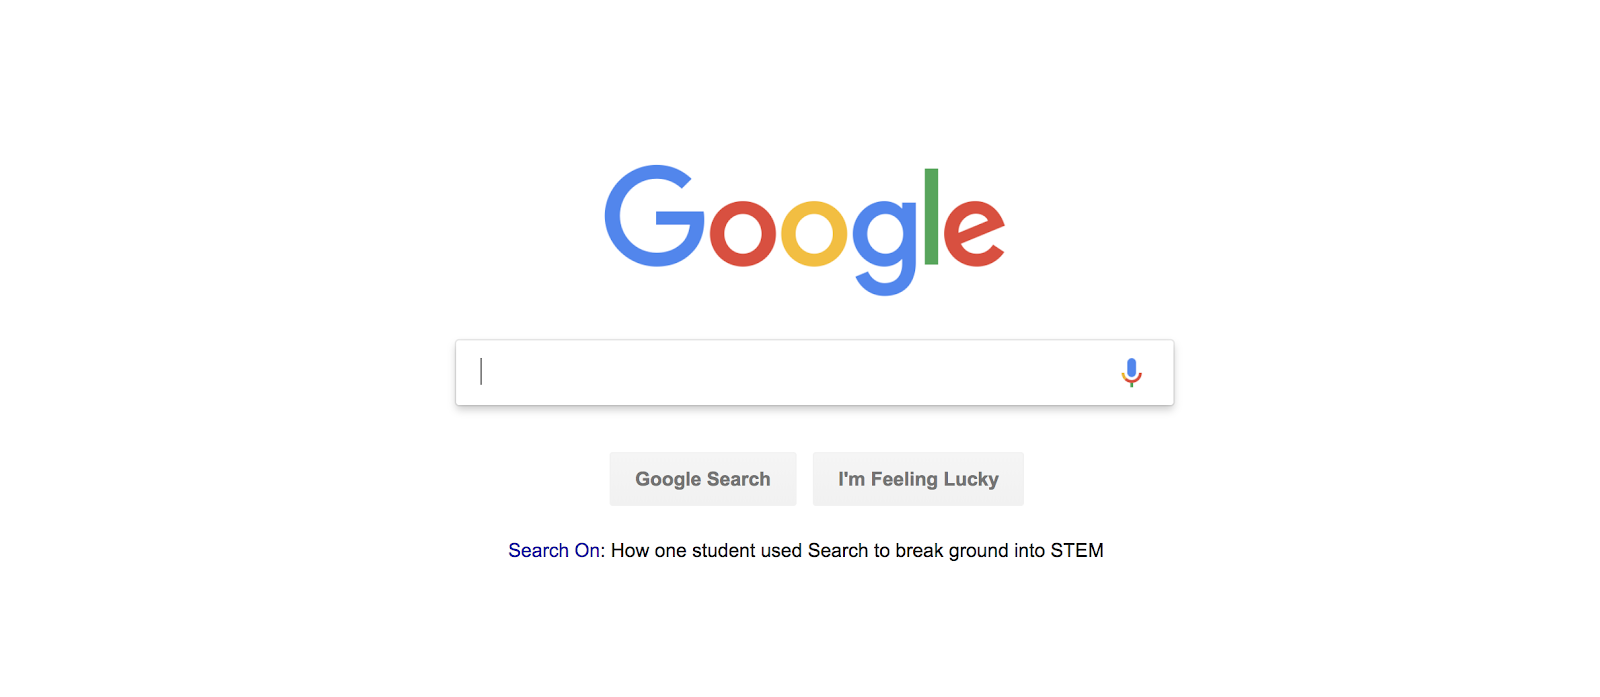 principali motori di ricerca: home page di Google